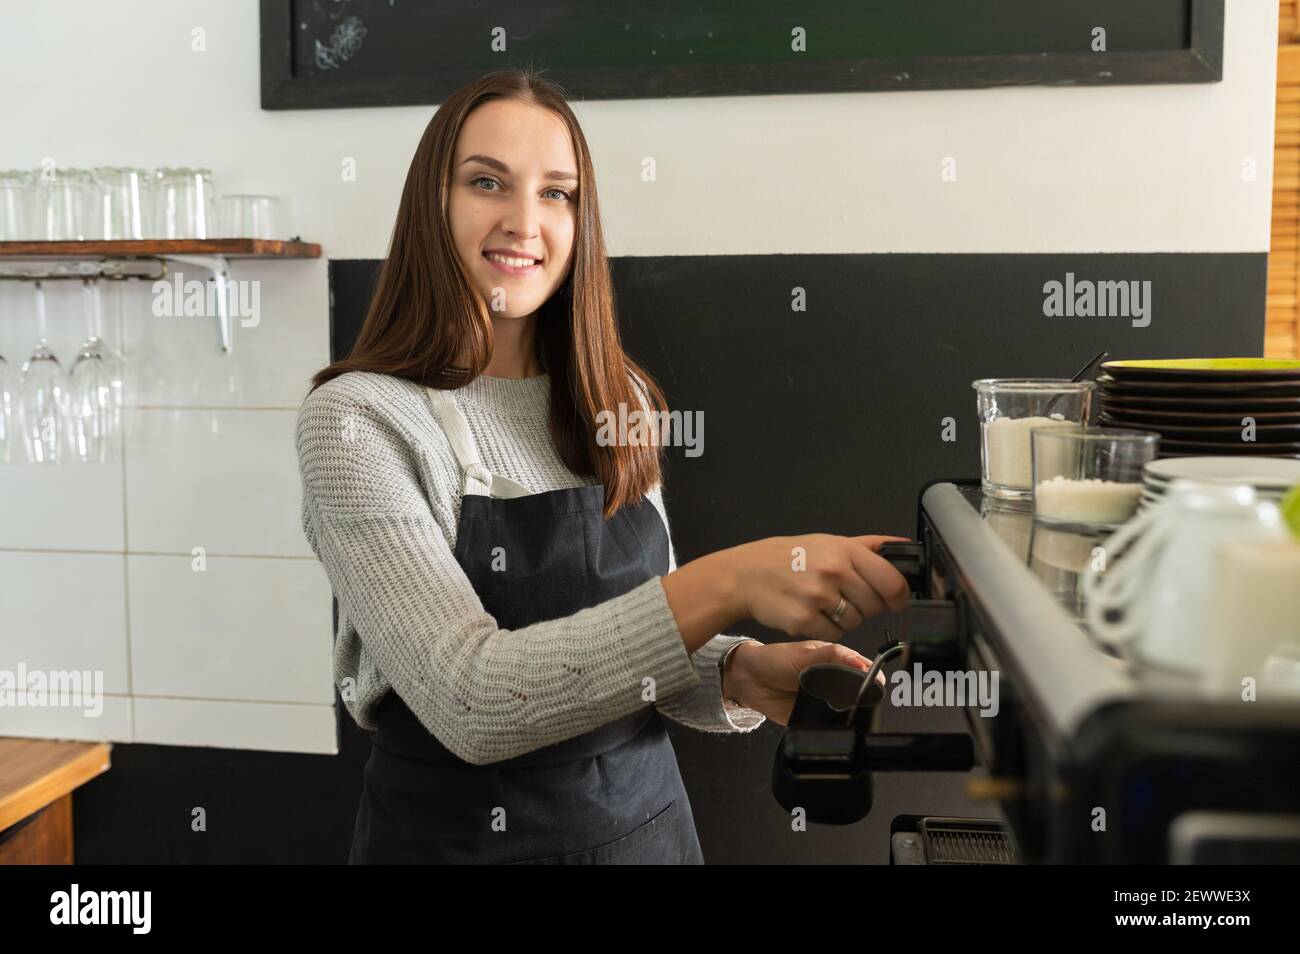 Femme Barista portant un tablier préparant du café dans un café, préparation professionnelle du café. Propriétaire d'une petite entreprise, serveuse Banque D'Images